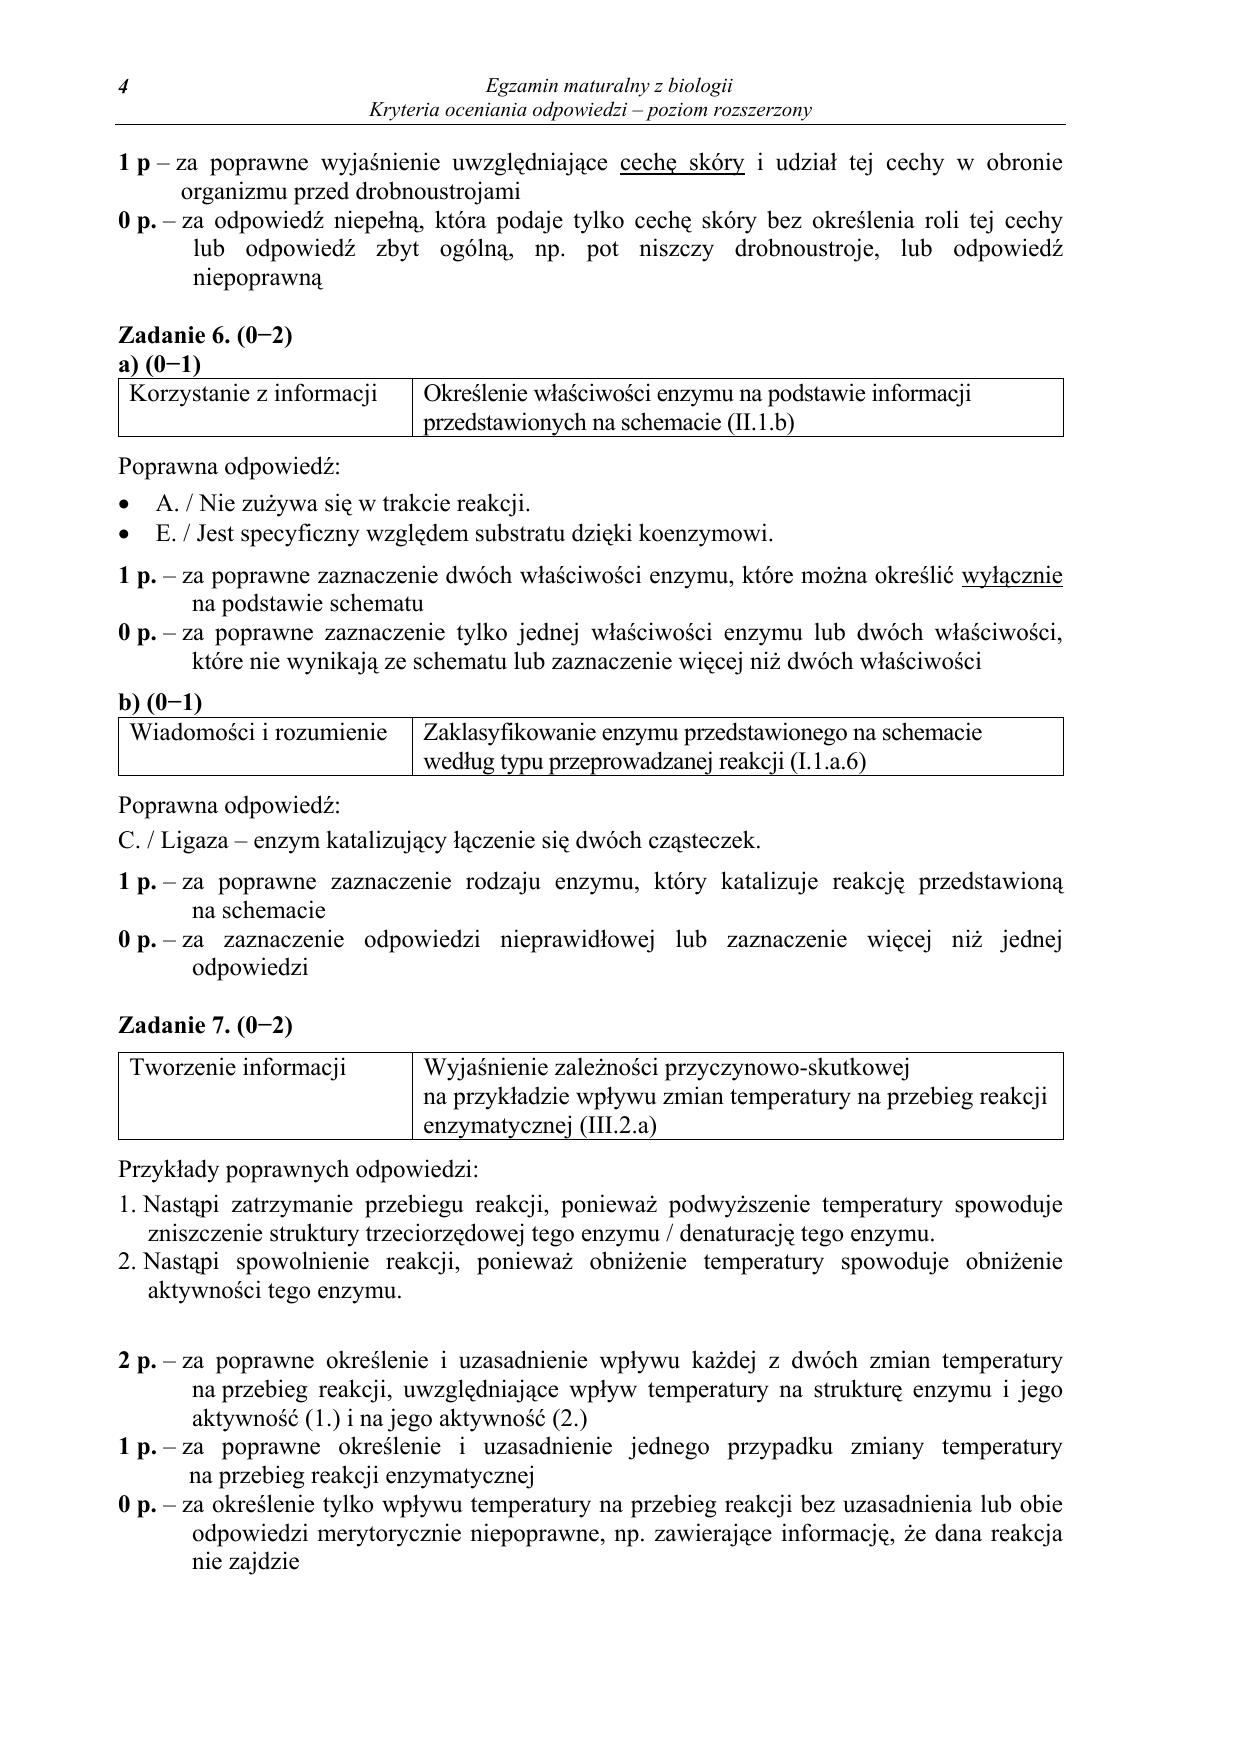 odpowiedzi-biologia-poziom-rozszerzony-matura-2012-04